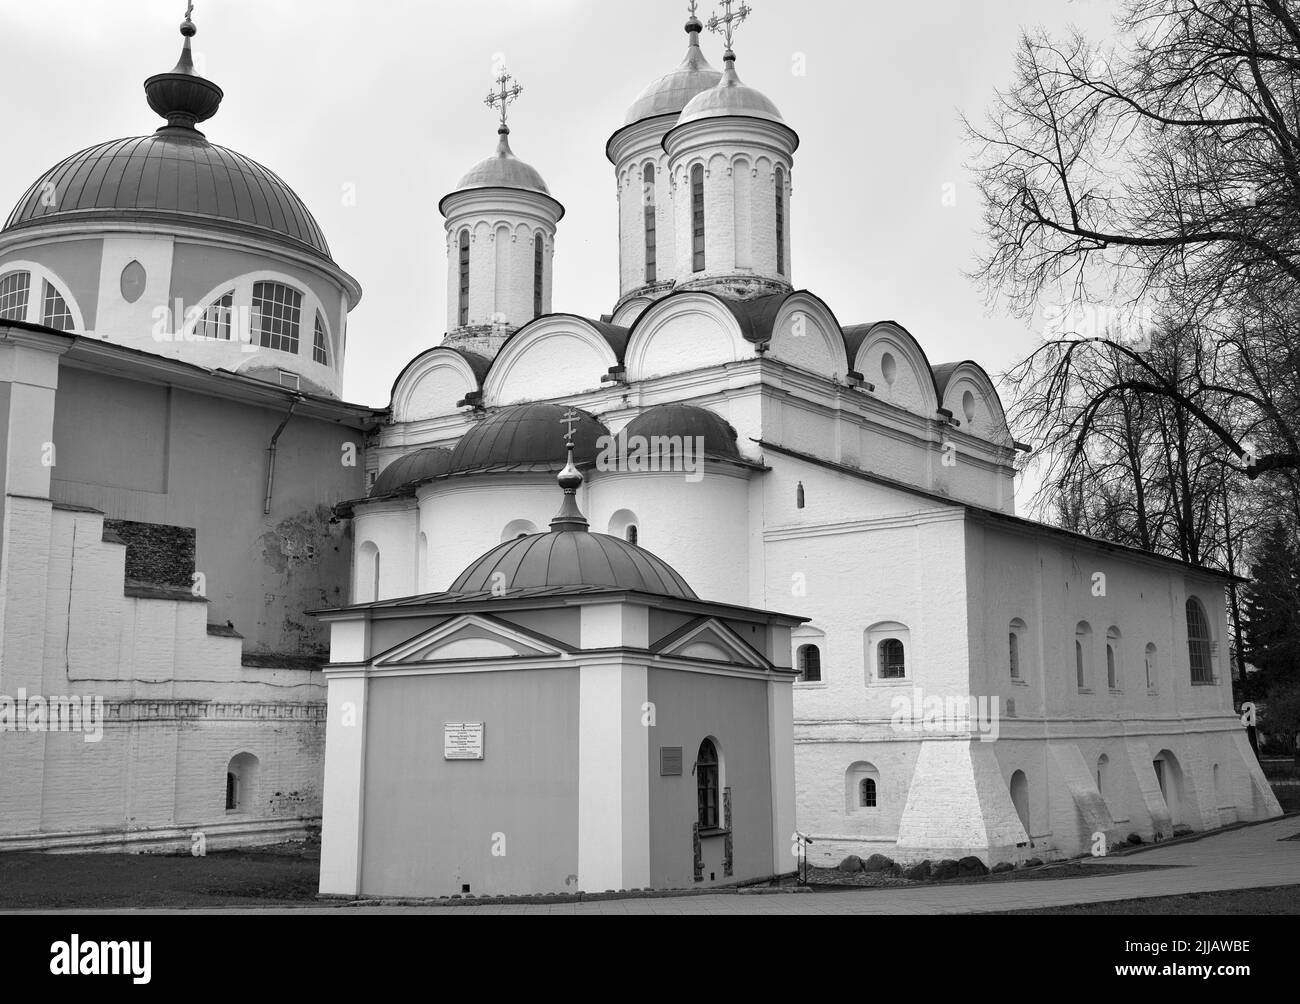 La cathédrale de Transfiguration en pierre blanche. Église orthodoxe, monument de l'architecture russe du XVIe siècle. Yaroslavl, Russie, 2022 Banque D'Images